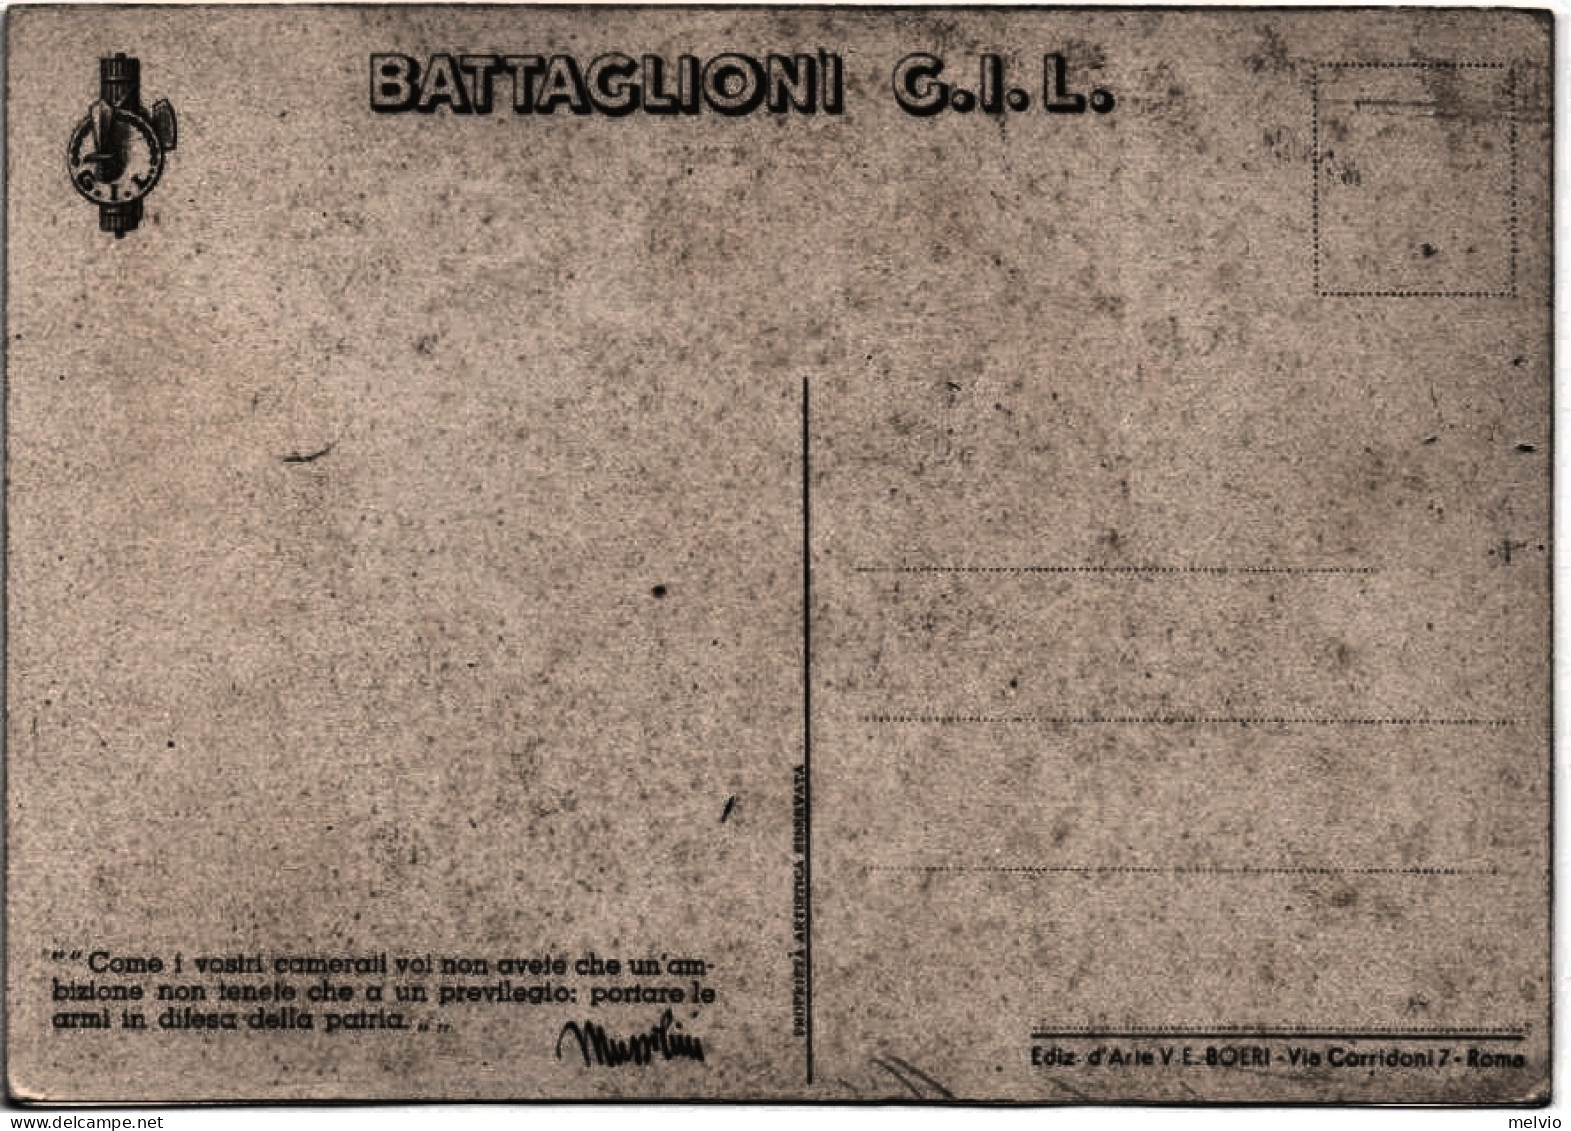 Battaglioni G.I.L., Illustratore D'Ercoli - Patriottiche